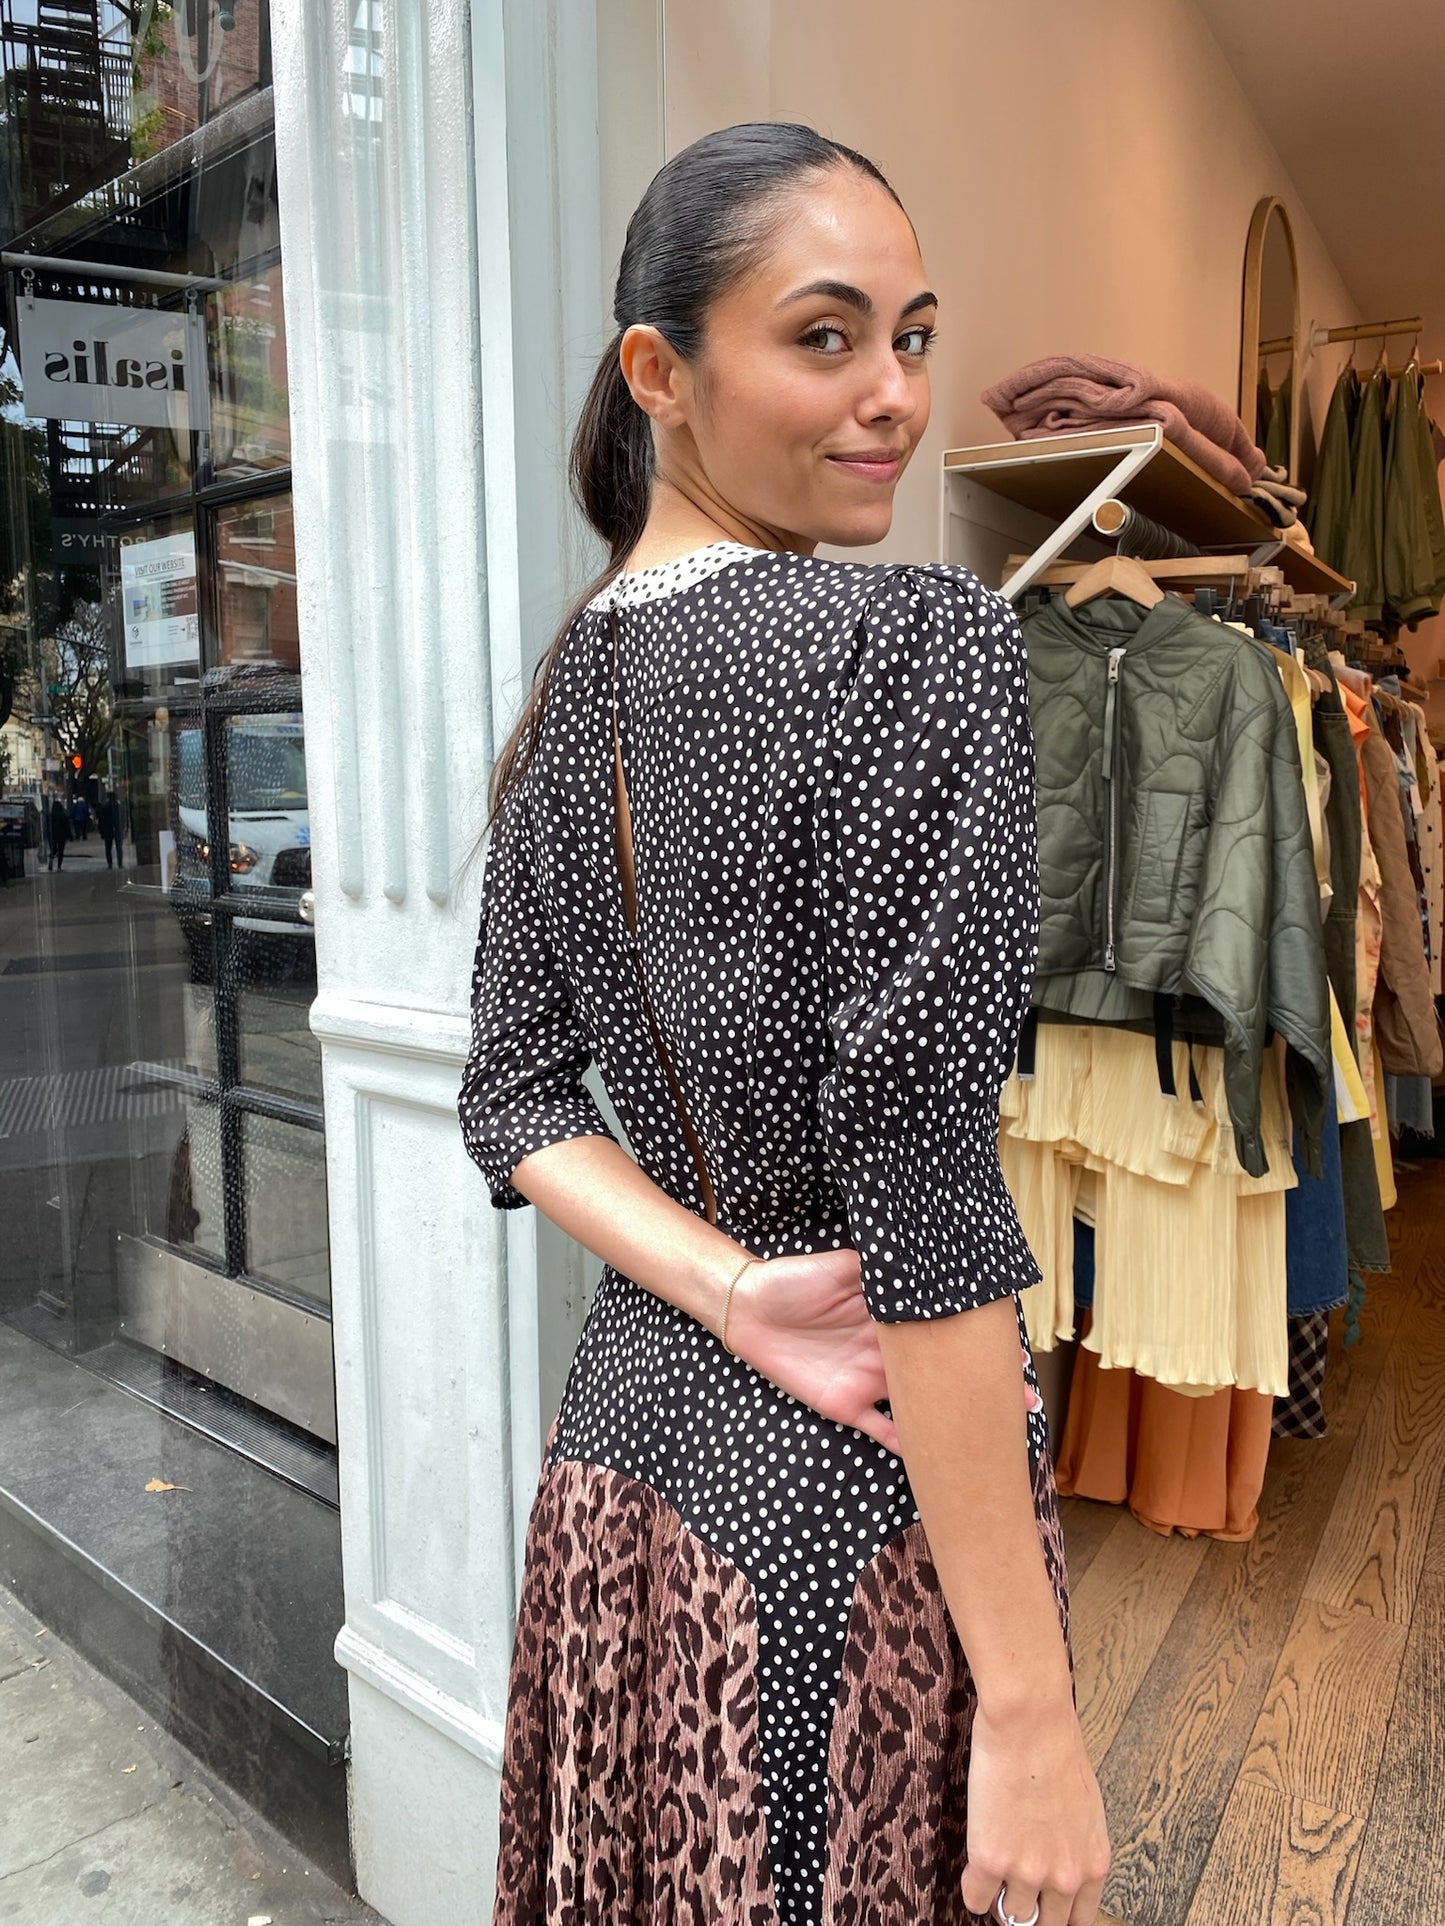 Meg Dress in Leopard Polka Dot